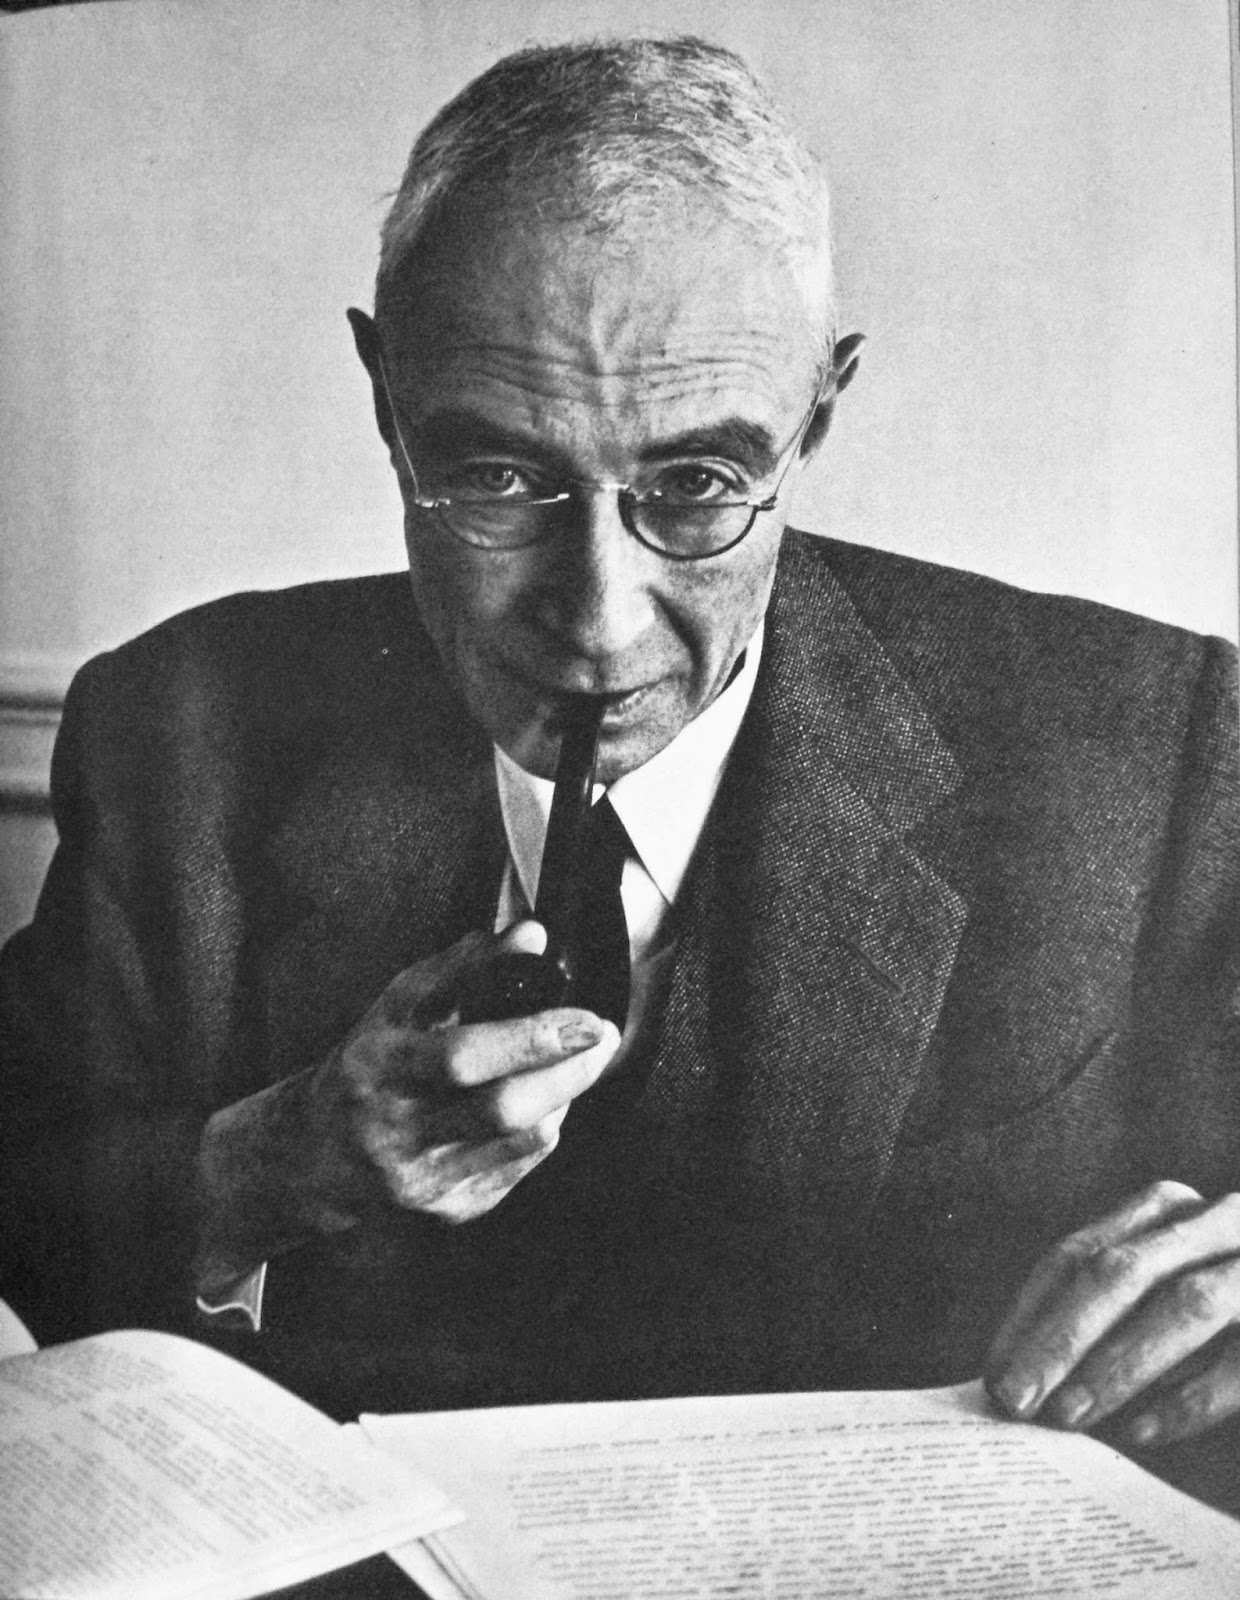 Оппенгемер. Julius Robert Oppenheimer. Оппенгеймер ученый. Оппенгеймер физик.